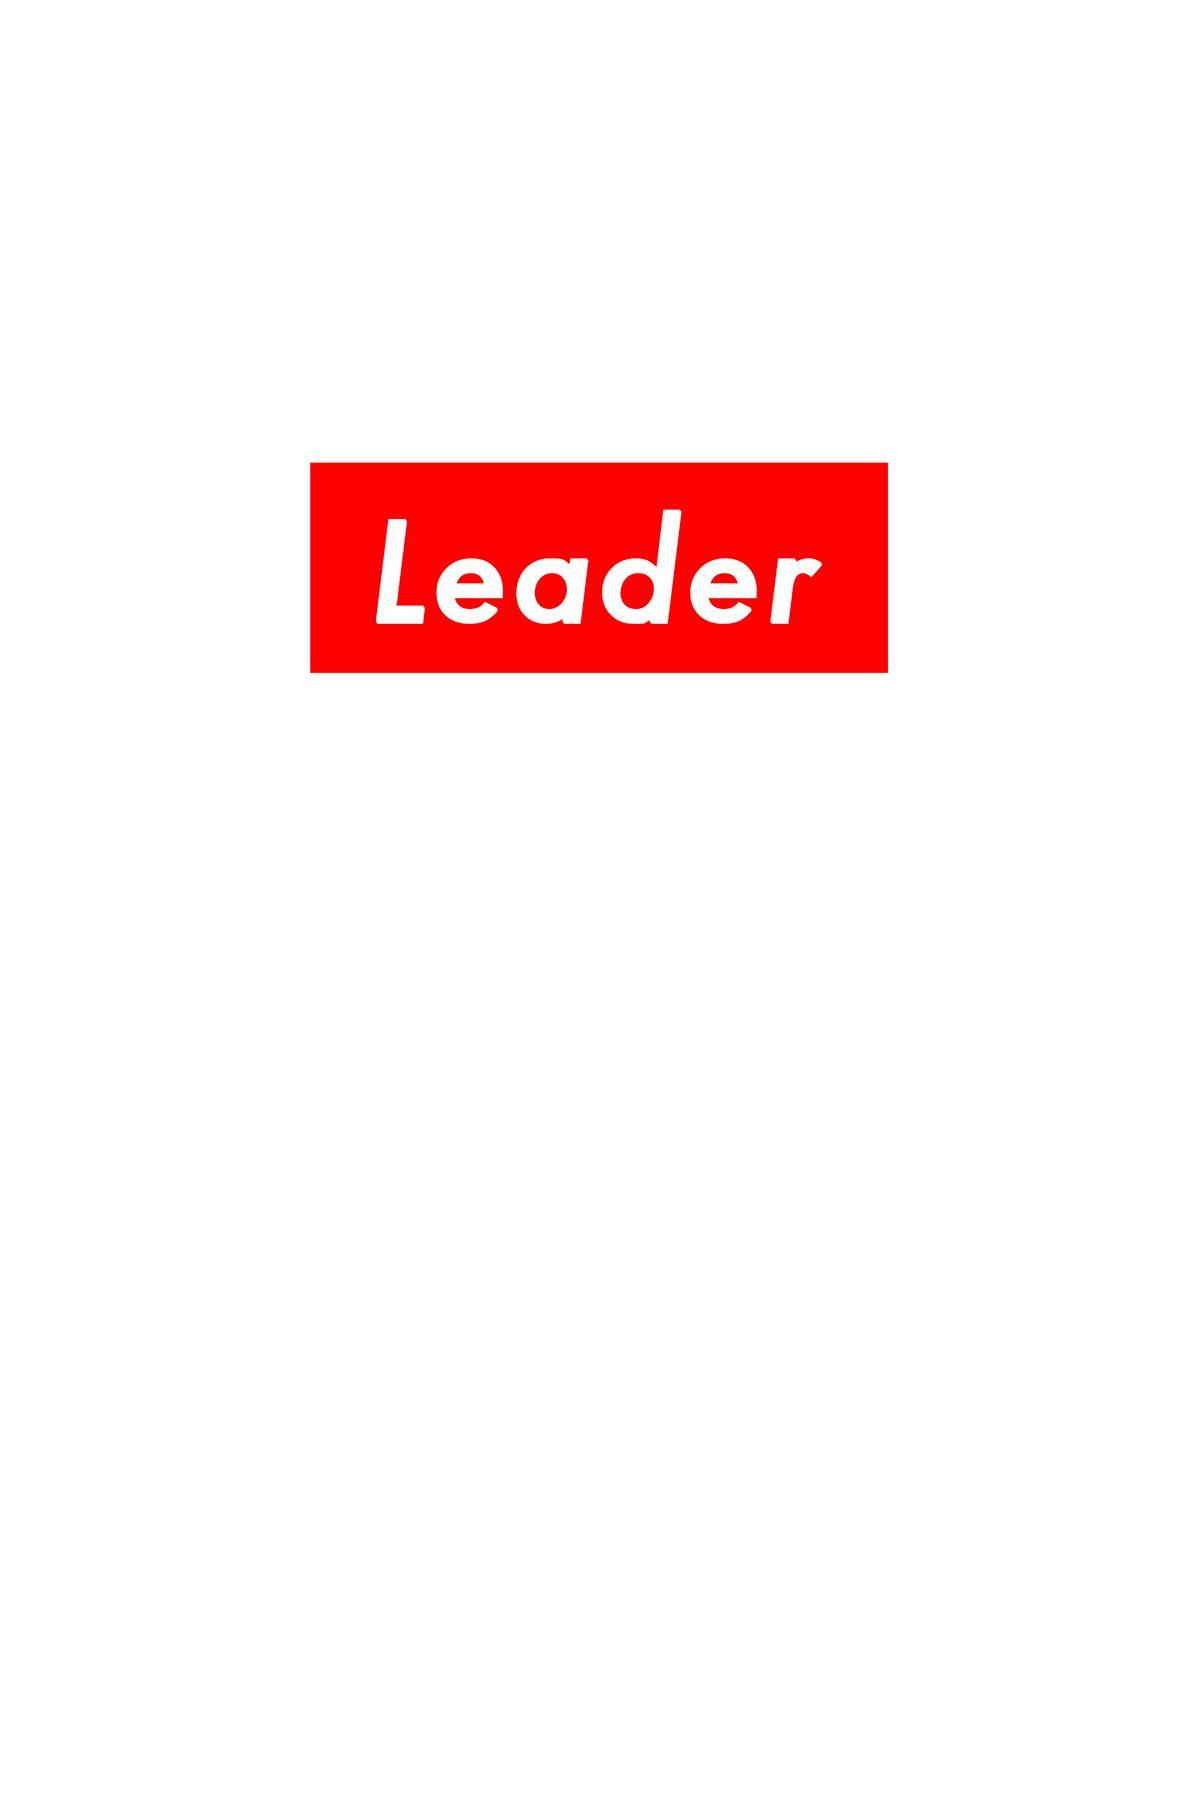 Supreme Leader Logo - Supreme Leader on Behance